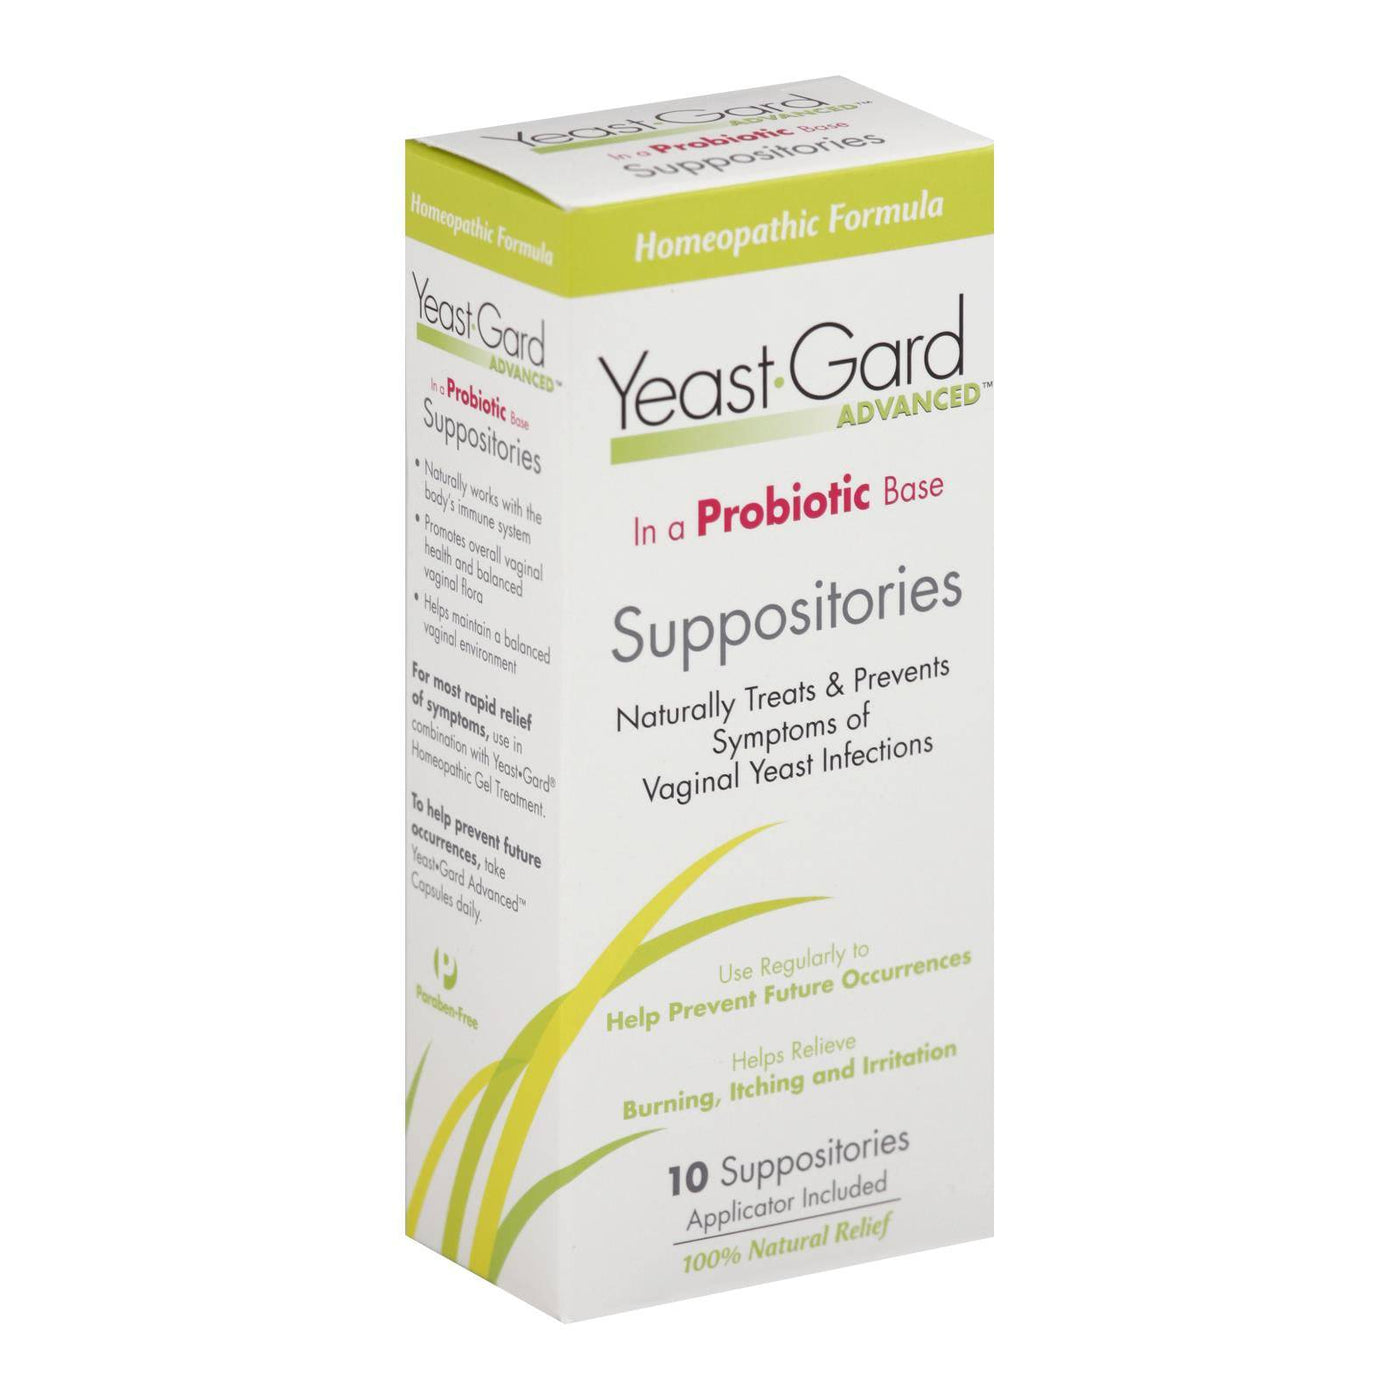 Women's Health Yeast-gard Advanced Suppositories - 10 Suppositories | OnlyNaturals.us